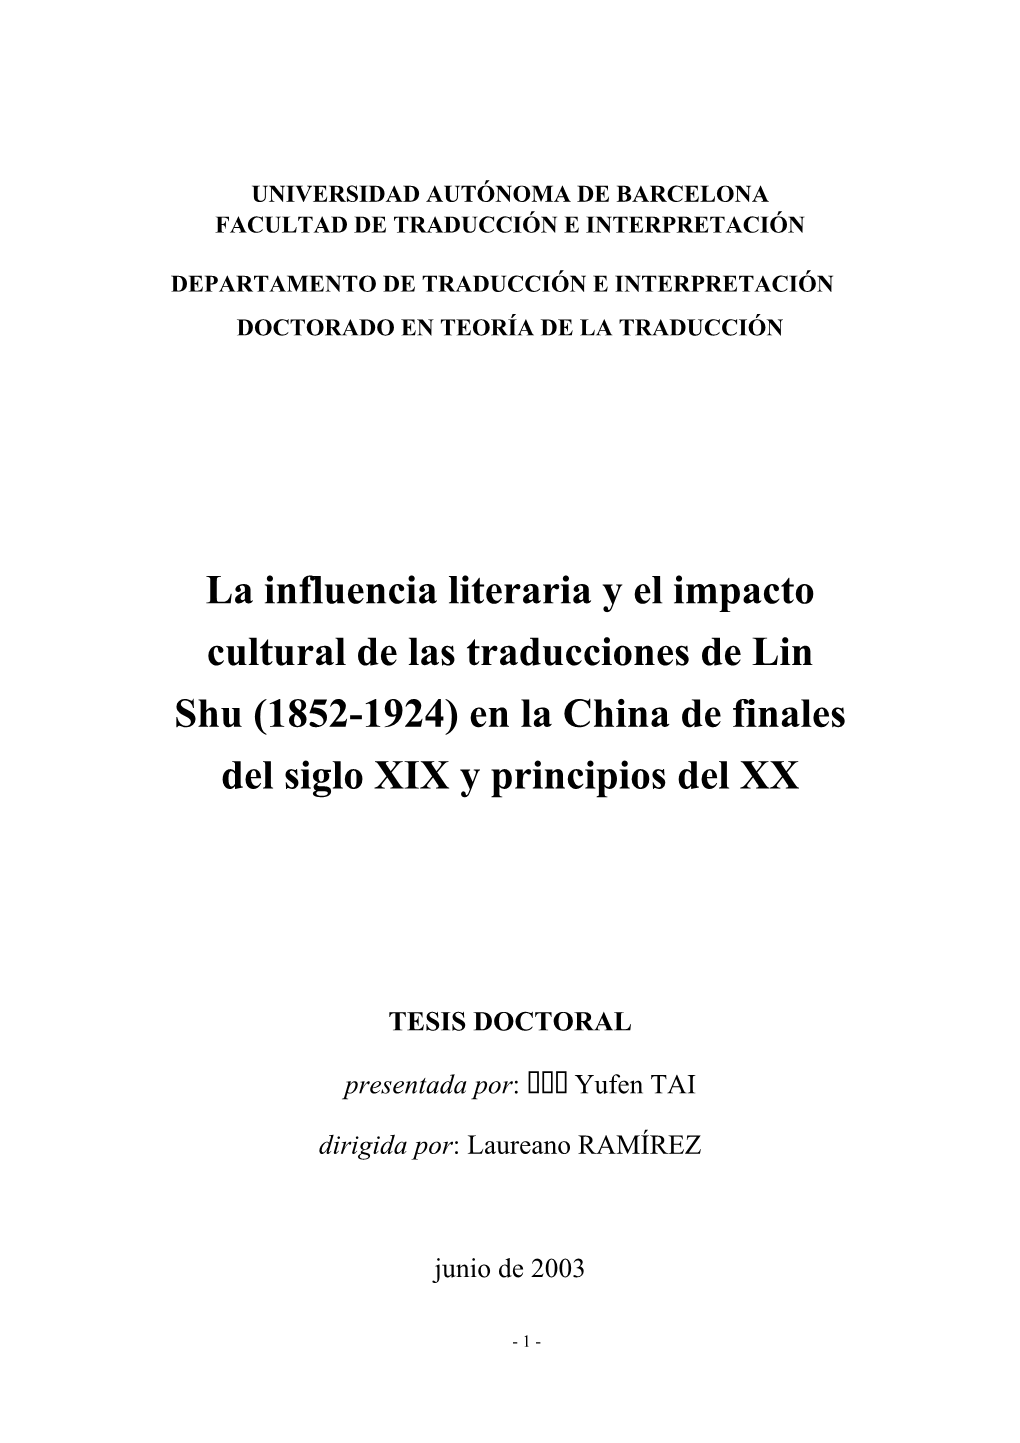 La Influencia Literaria Y El Impacto Cultural De Las Traducciones De Lin Shu (1852-1924) En La China De Finales Del Siglo XIX Y Principios Del XX